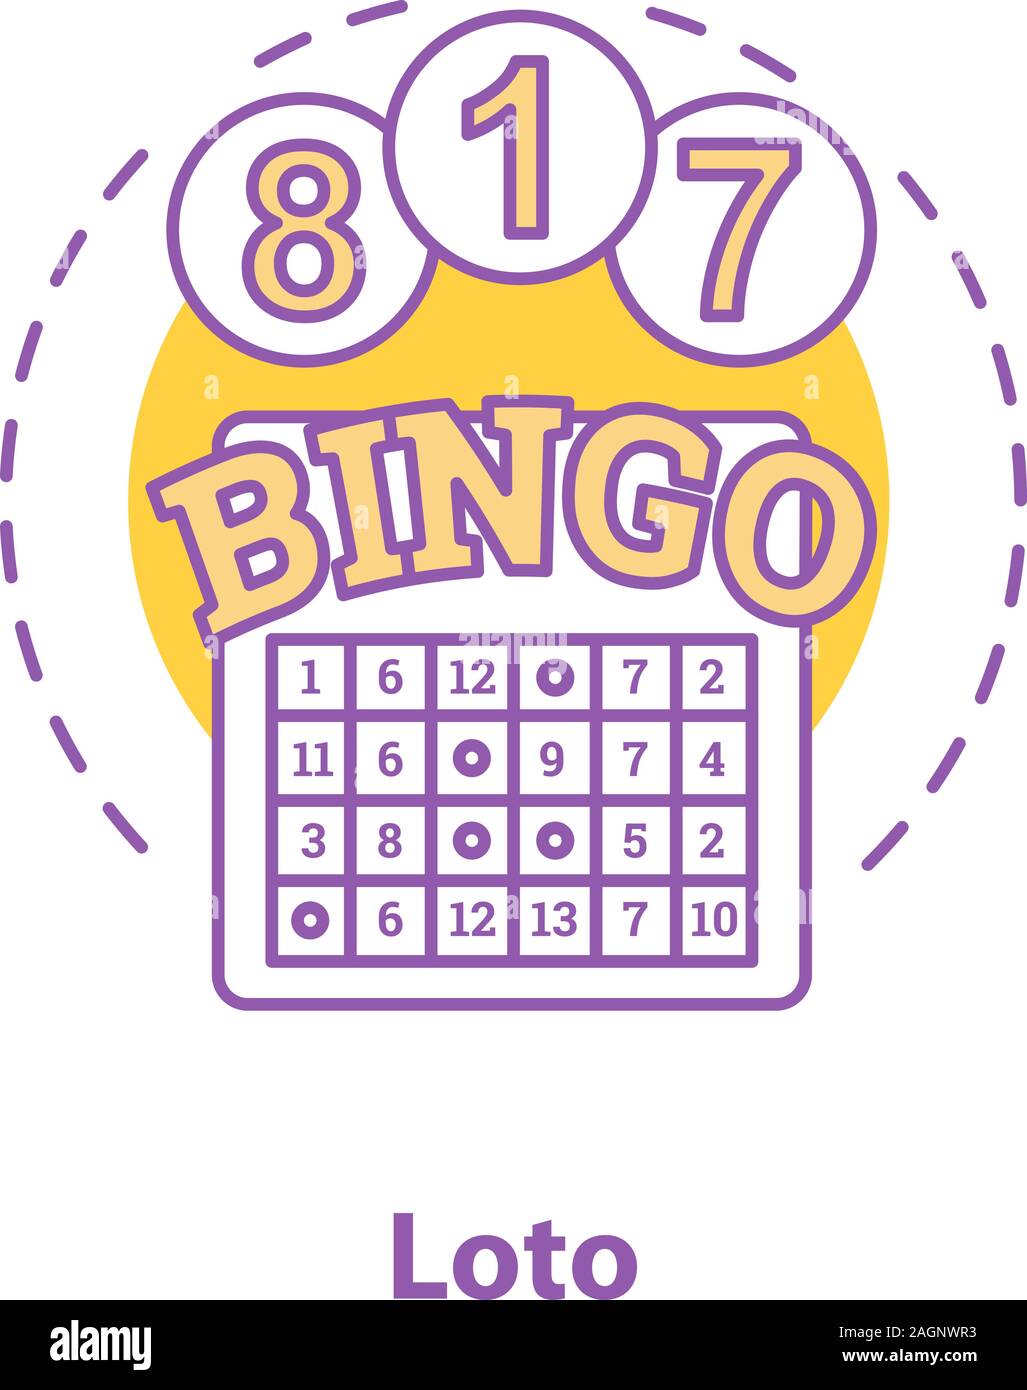 bingo loto - Poker team